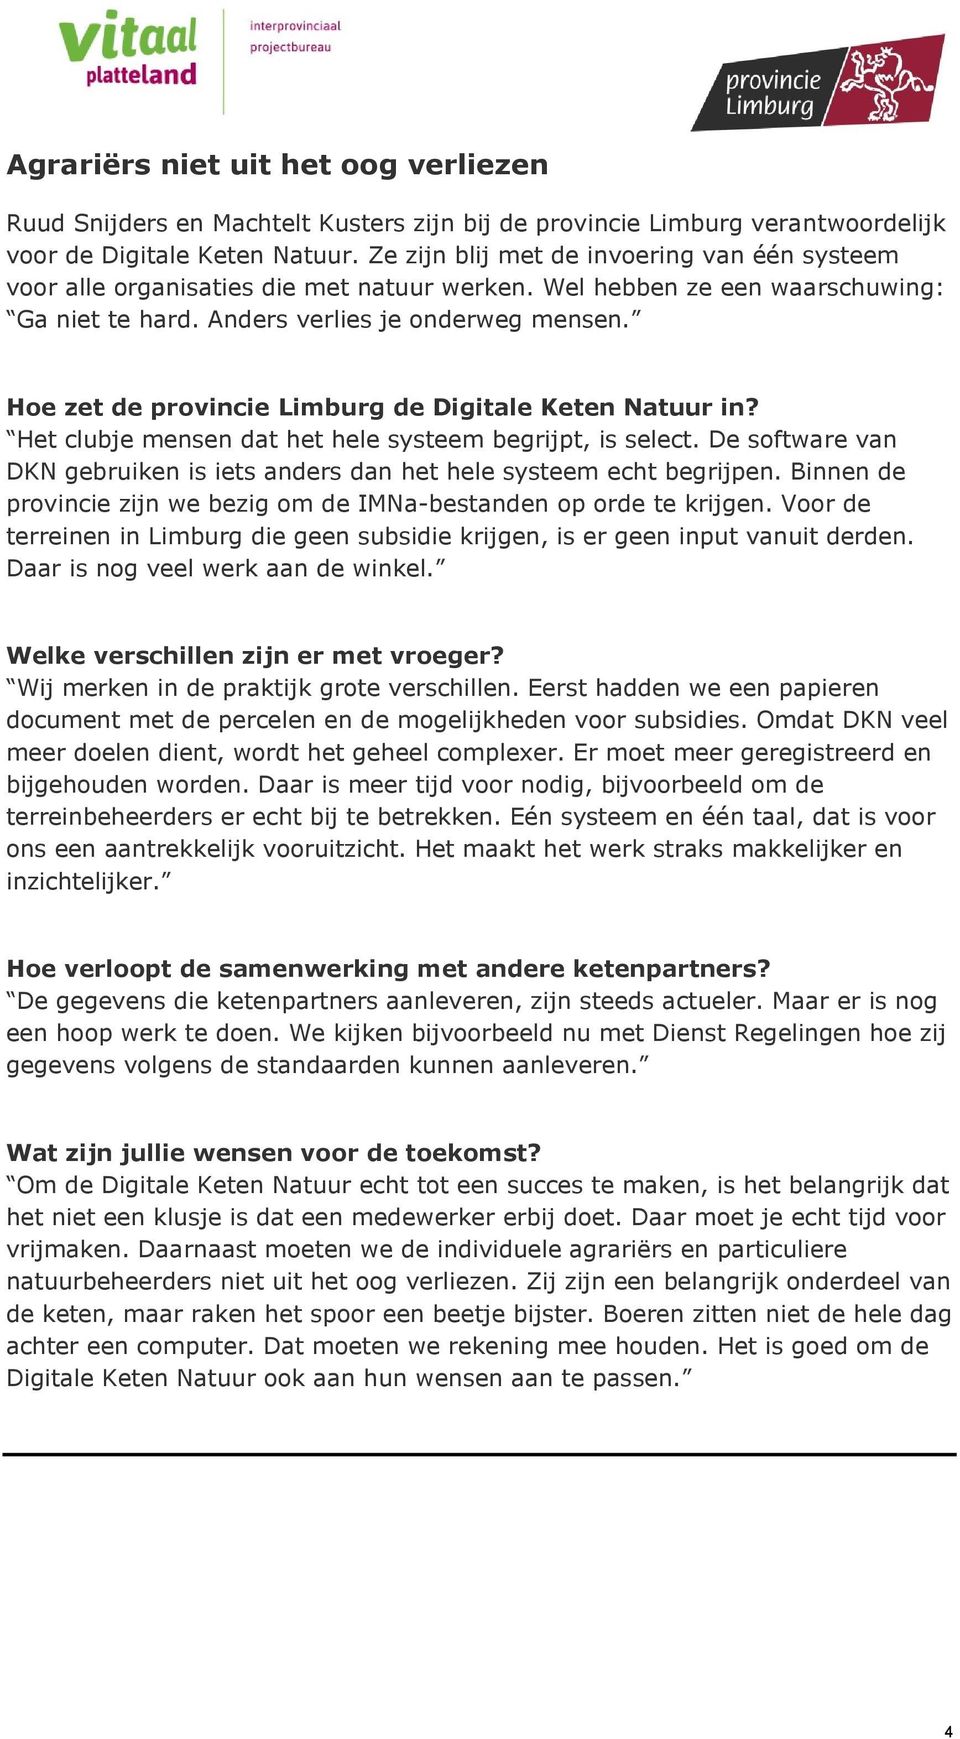 Hoe zet de provincie Limburg de Digitale Keten Natuur in? Het clubje mensen dat het hele systeem begrijpt, is select. De software van DKN gebruiken is iets anders dan het hele systeem echt begrijpen.